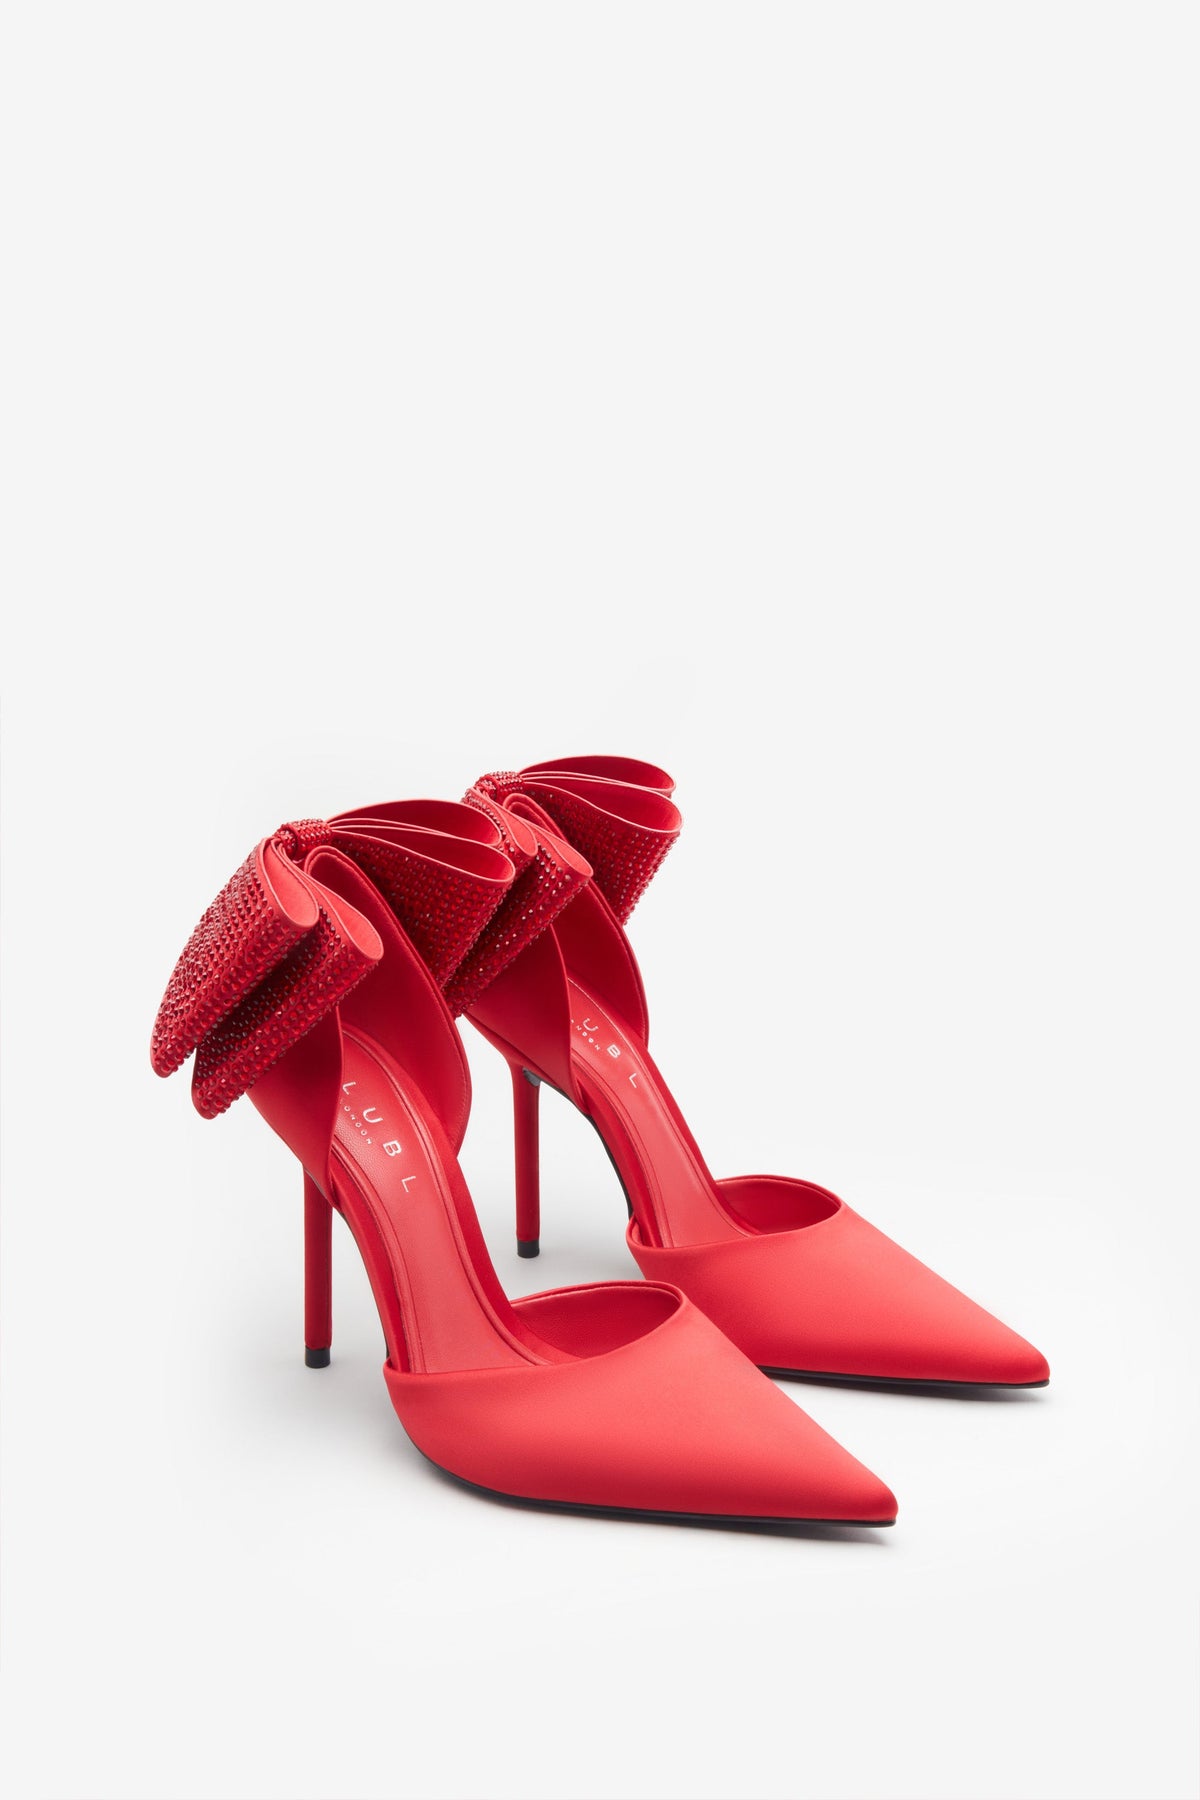 Zara Leather Heels | Heels, Leather heels, Leather high heels